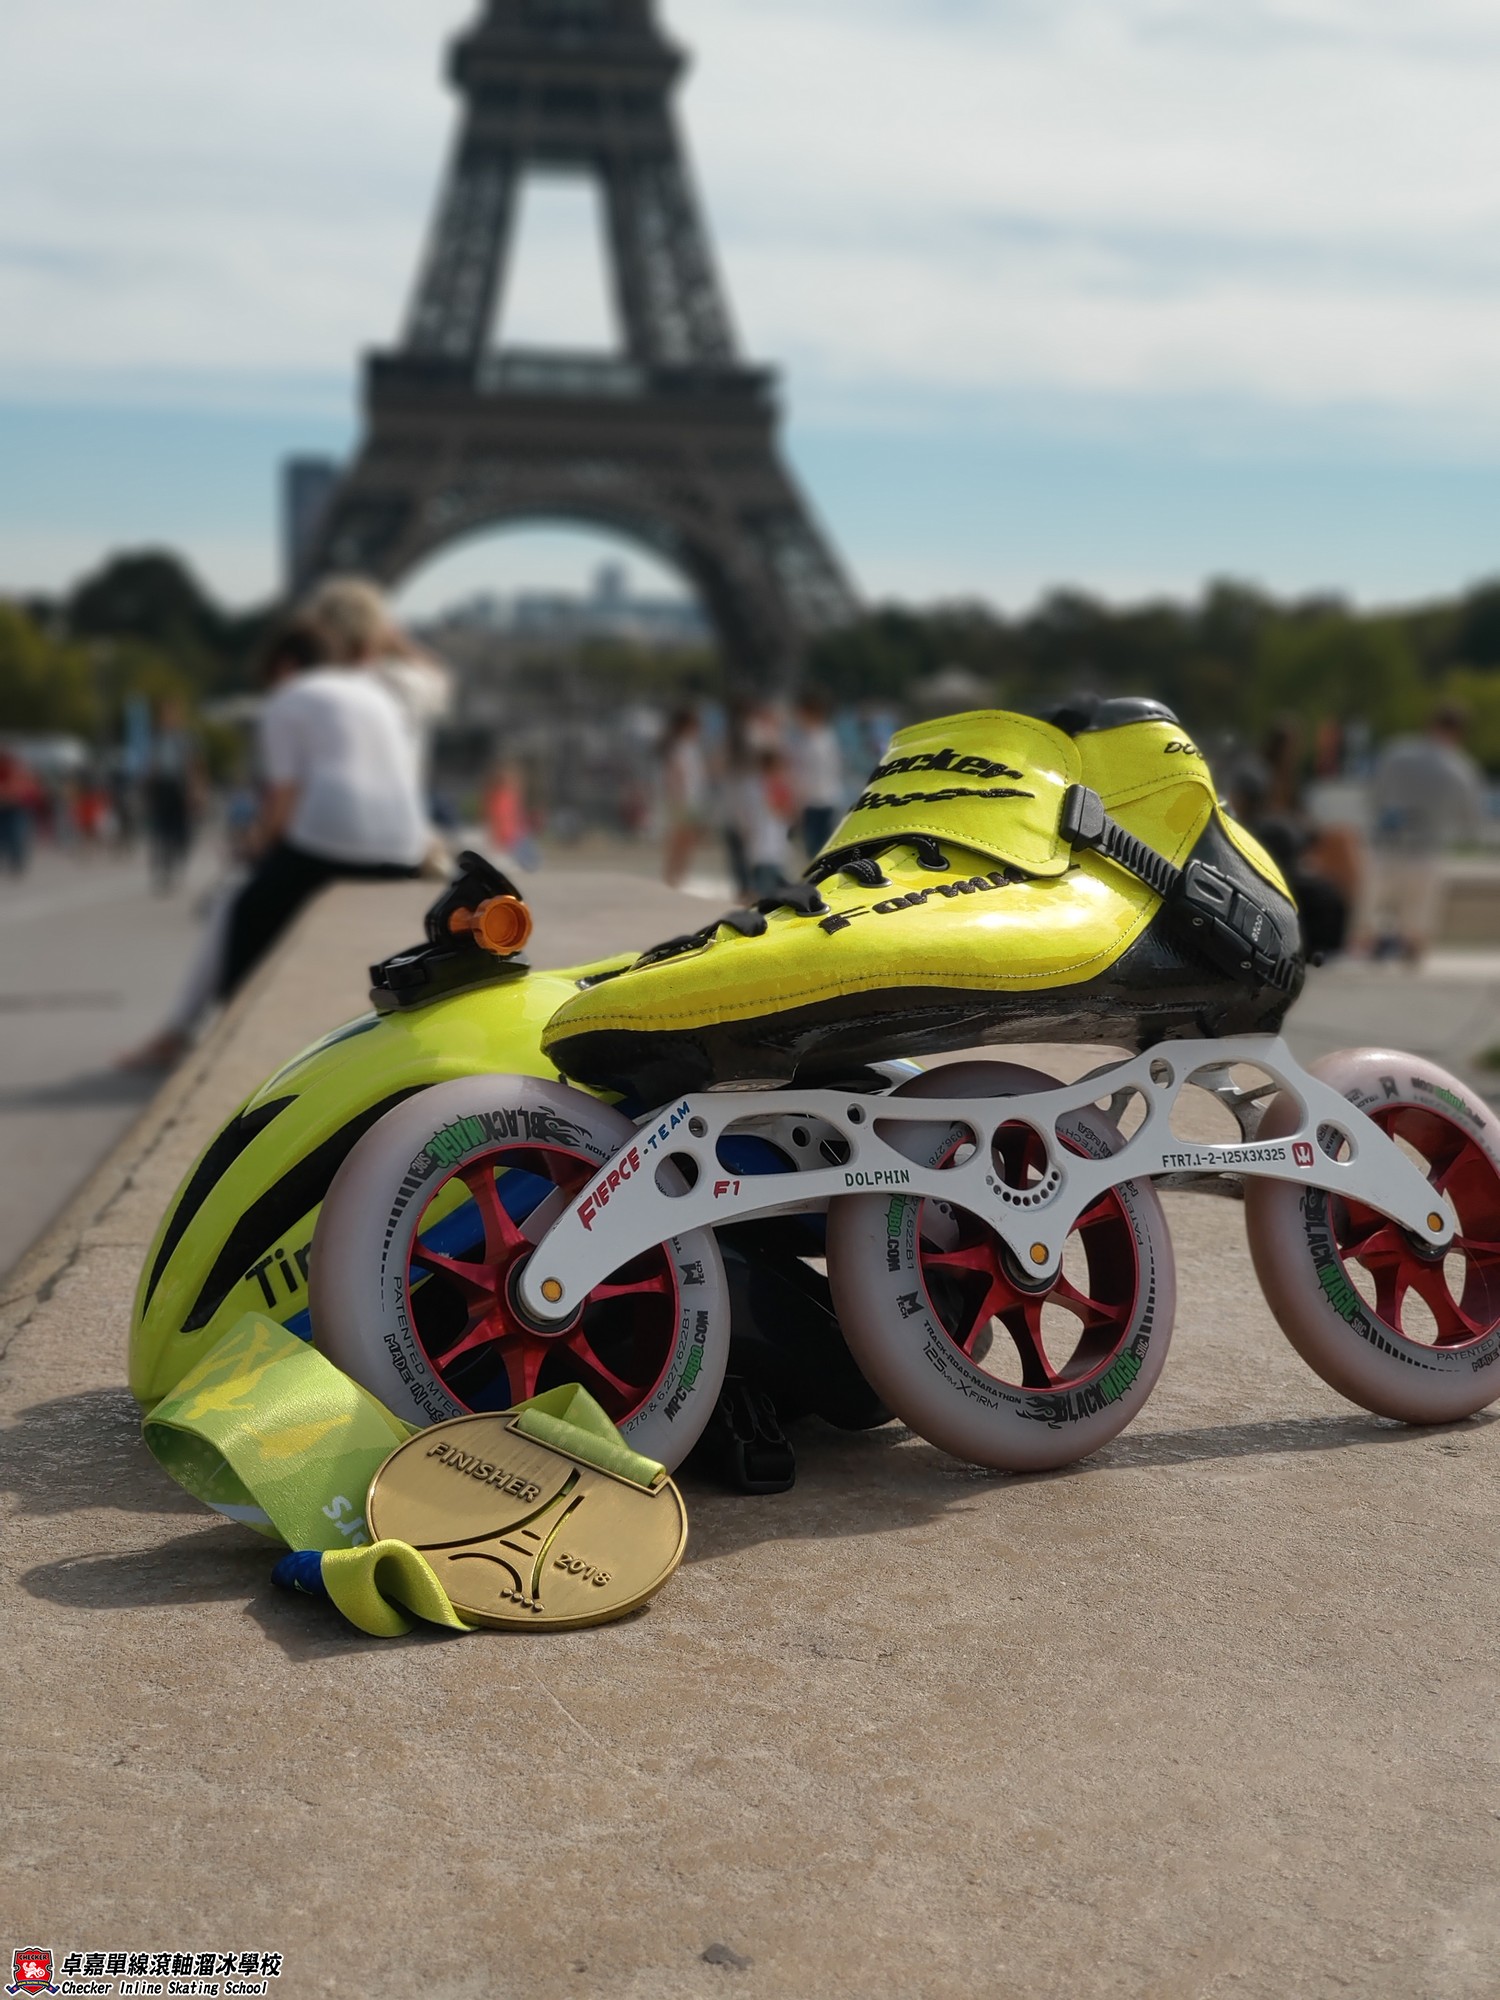 2018-09-16 Paris Marathon